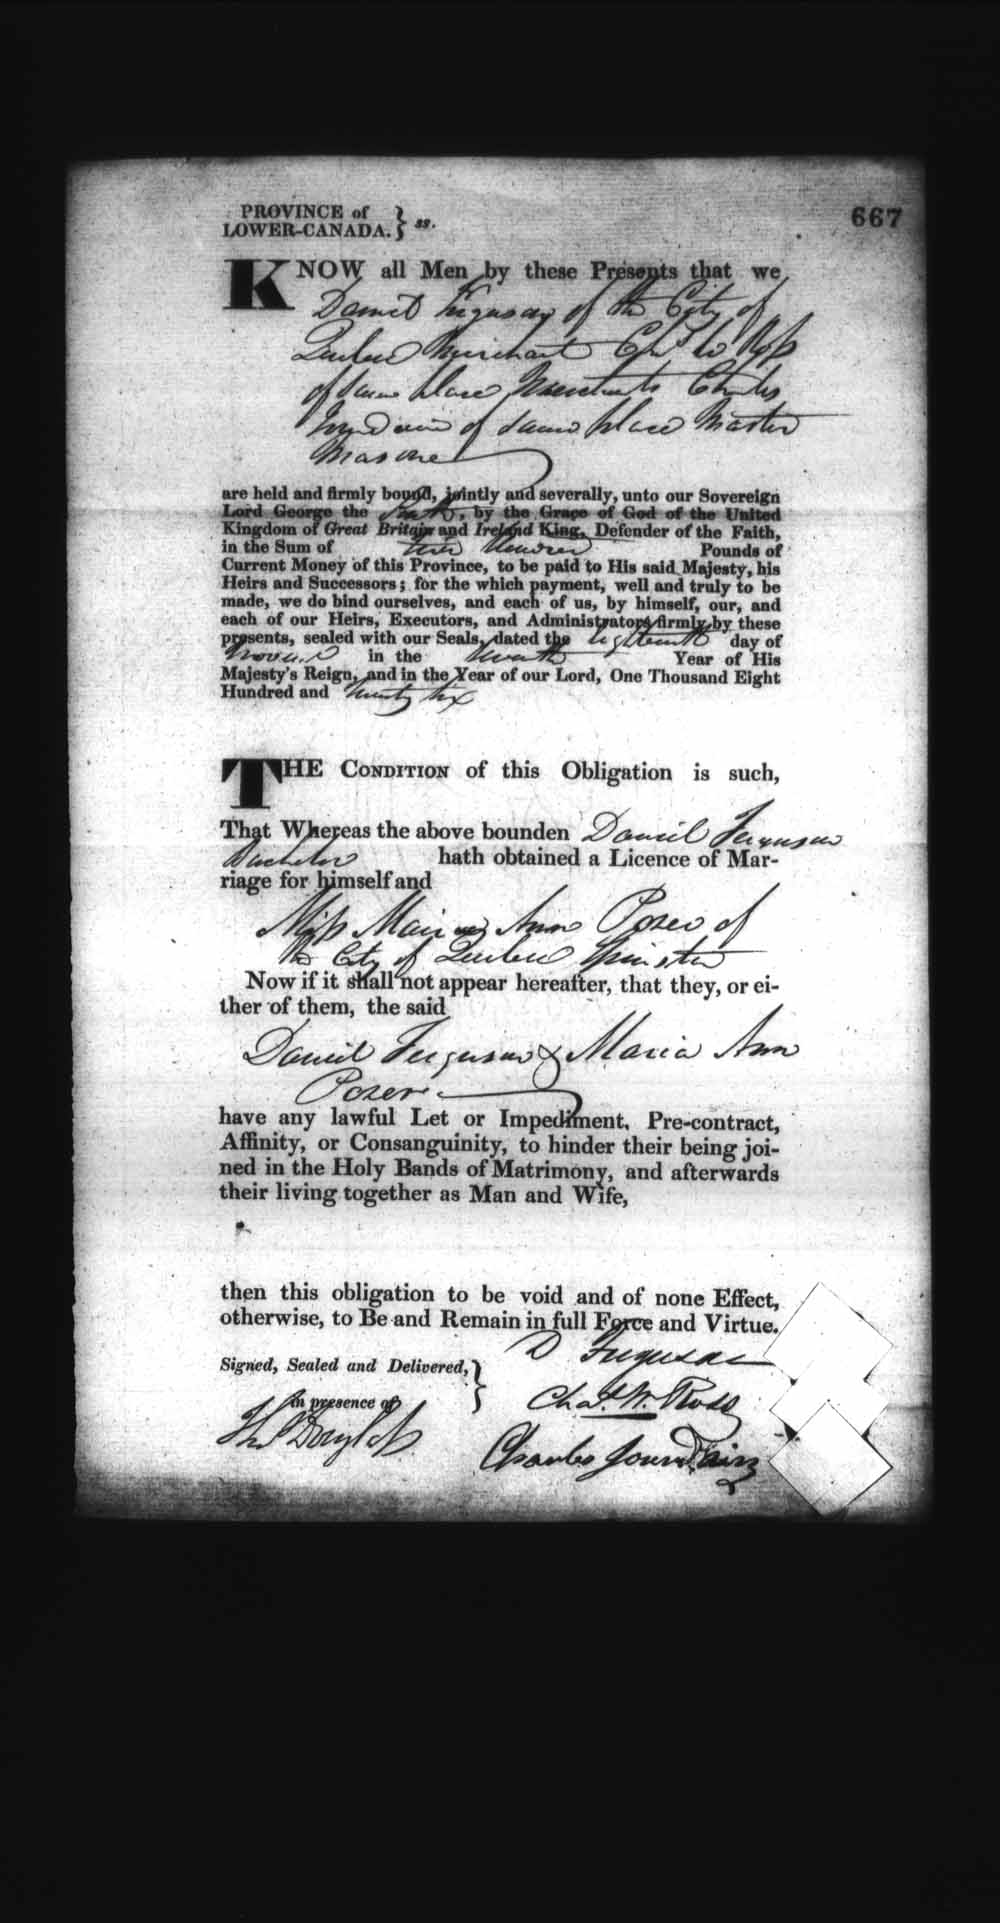 Page numérisé de Cautionnements de mariages pour le Haut-Canada et le Bas-Canada (1779-1865) pour l'image numéro: e008236705